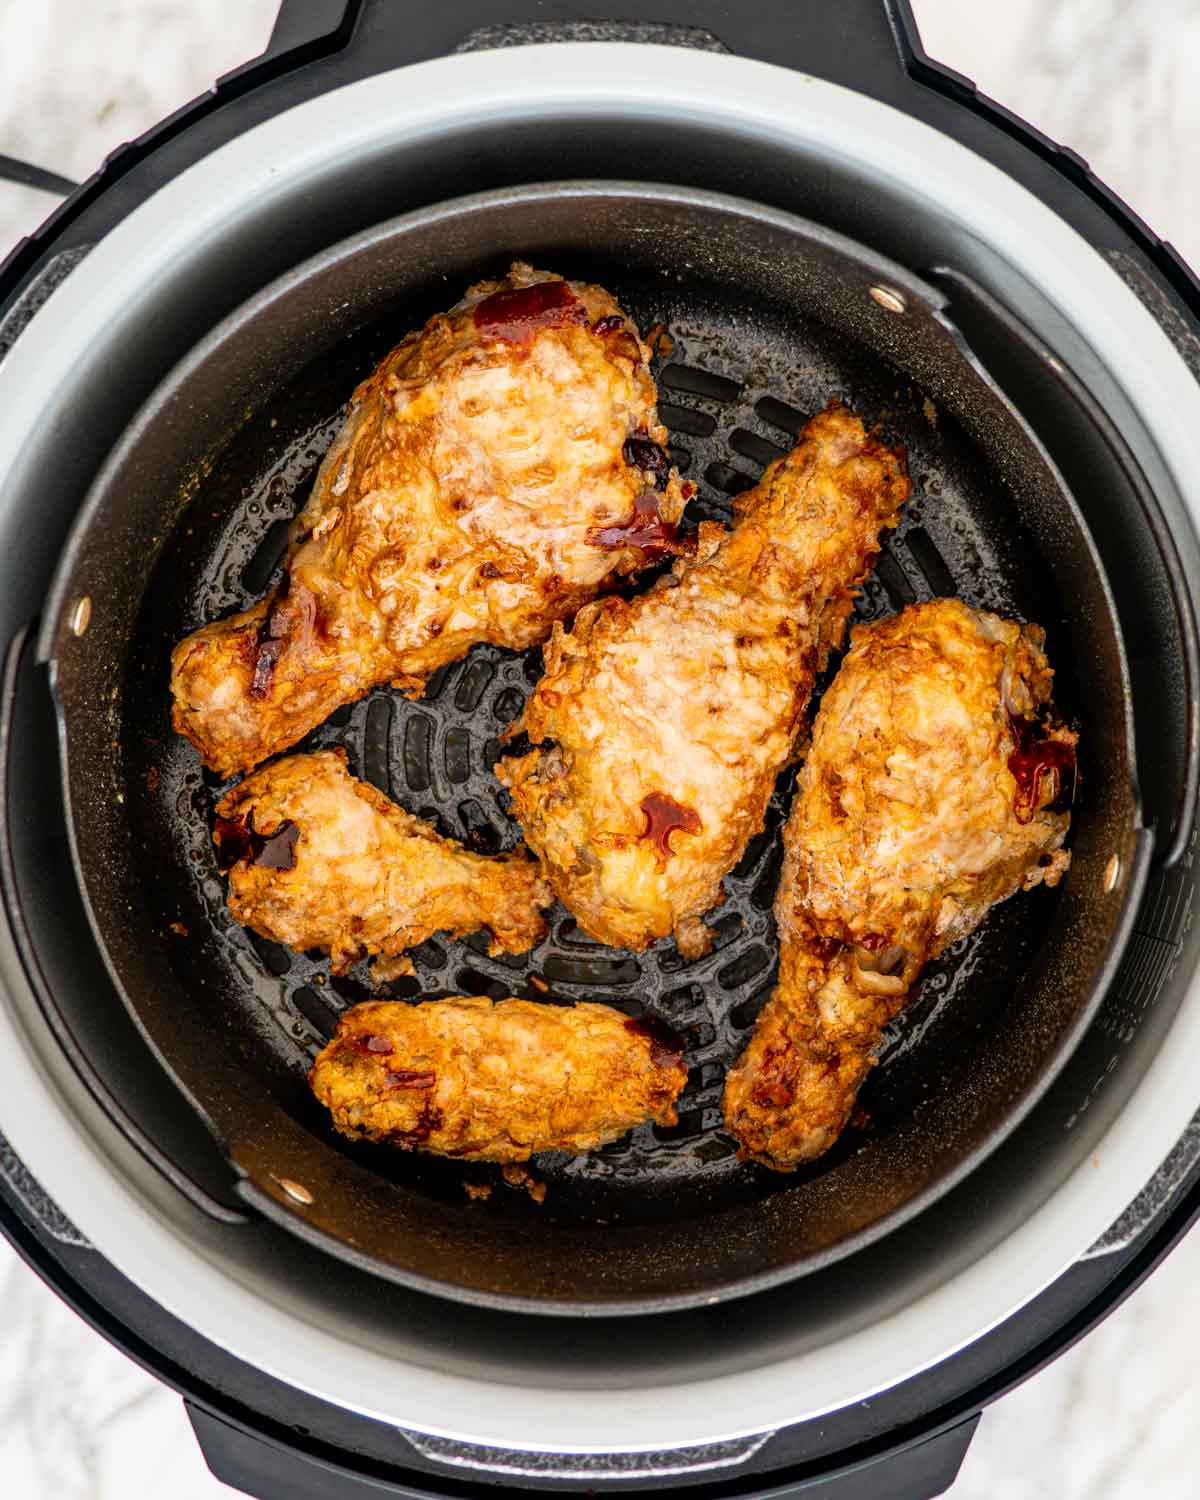 https://www.jocooks.com/wp-content/uploads/2020/03/air-fryer-fried-chicken-1-17.jpg